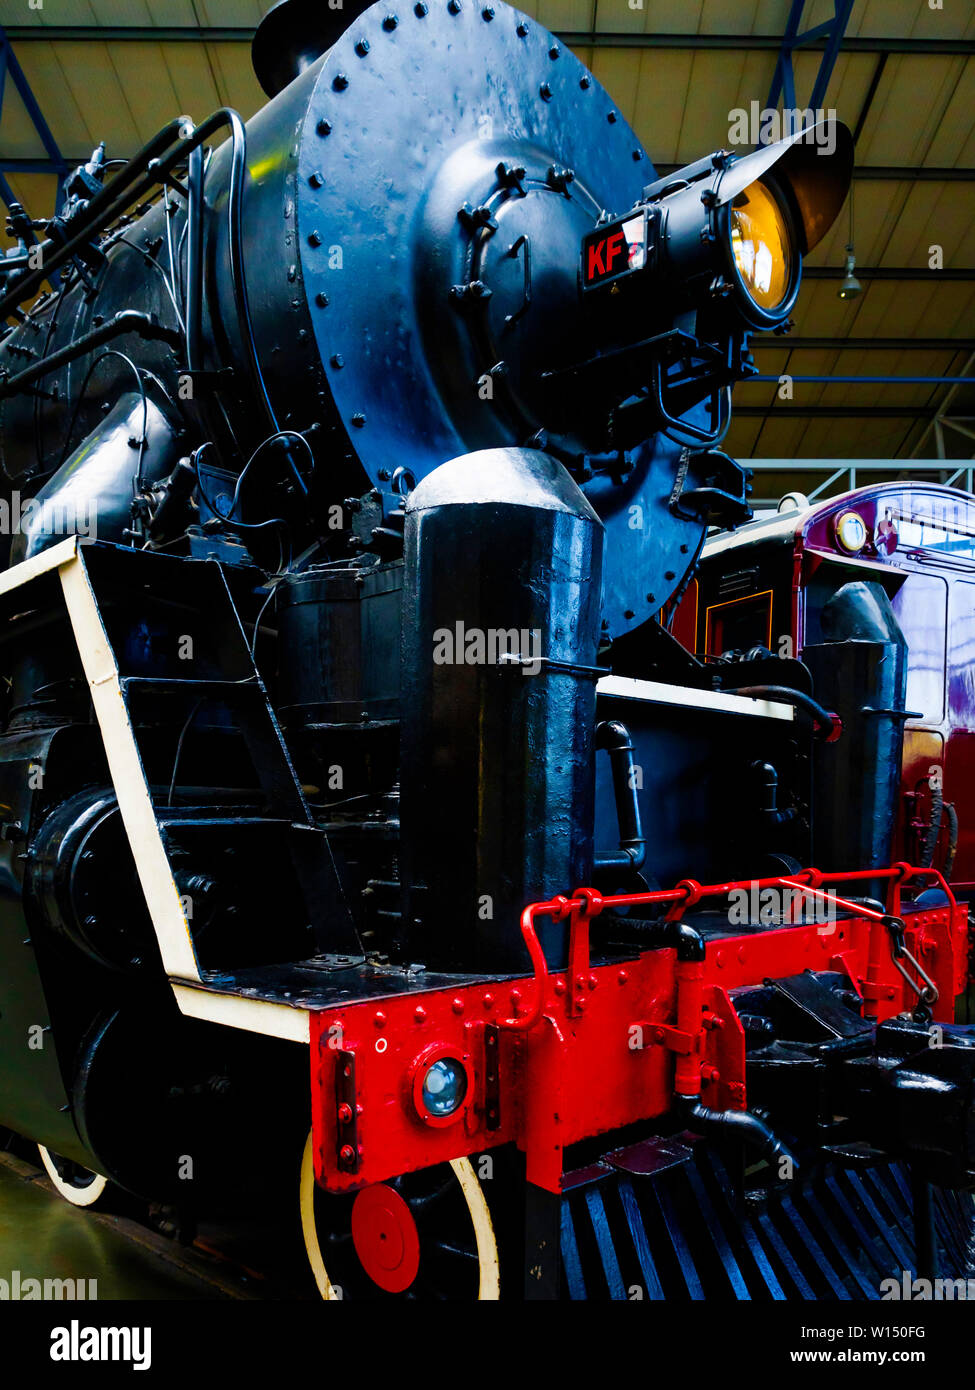 Un passager 4-8-4 locomotive vapeur de fer chinois construit par Vulcan Foundry détail montrant l'extrémité avant de la loco Banque D'Images